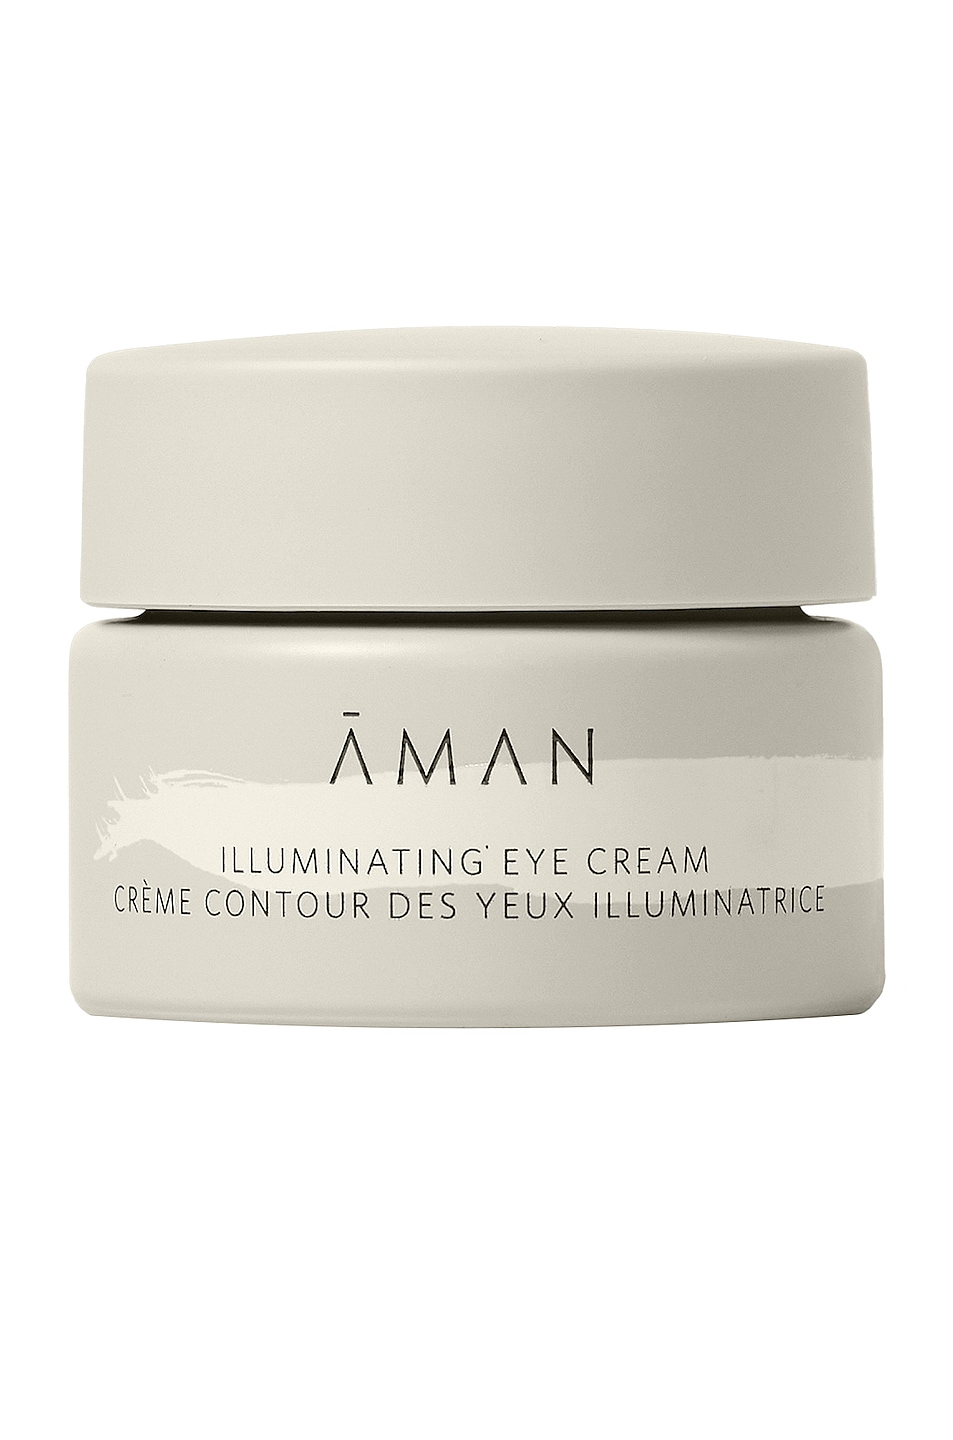 Illuminating Eye Cream in Beauty: NA